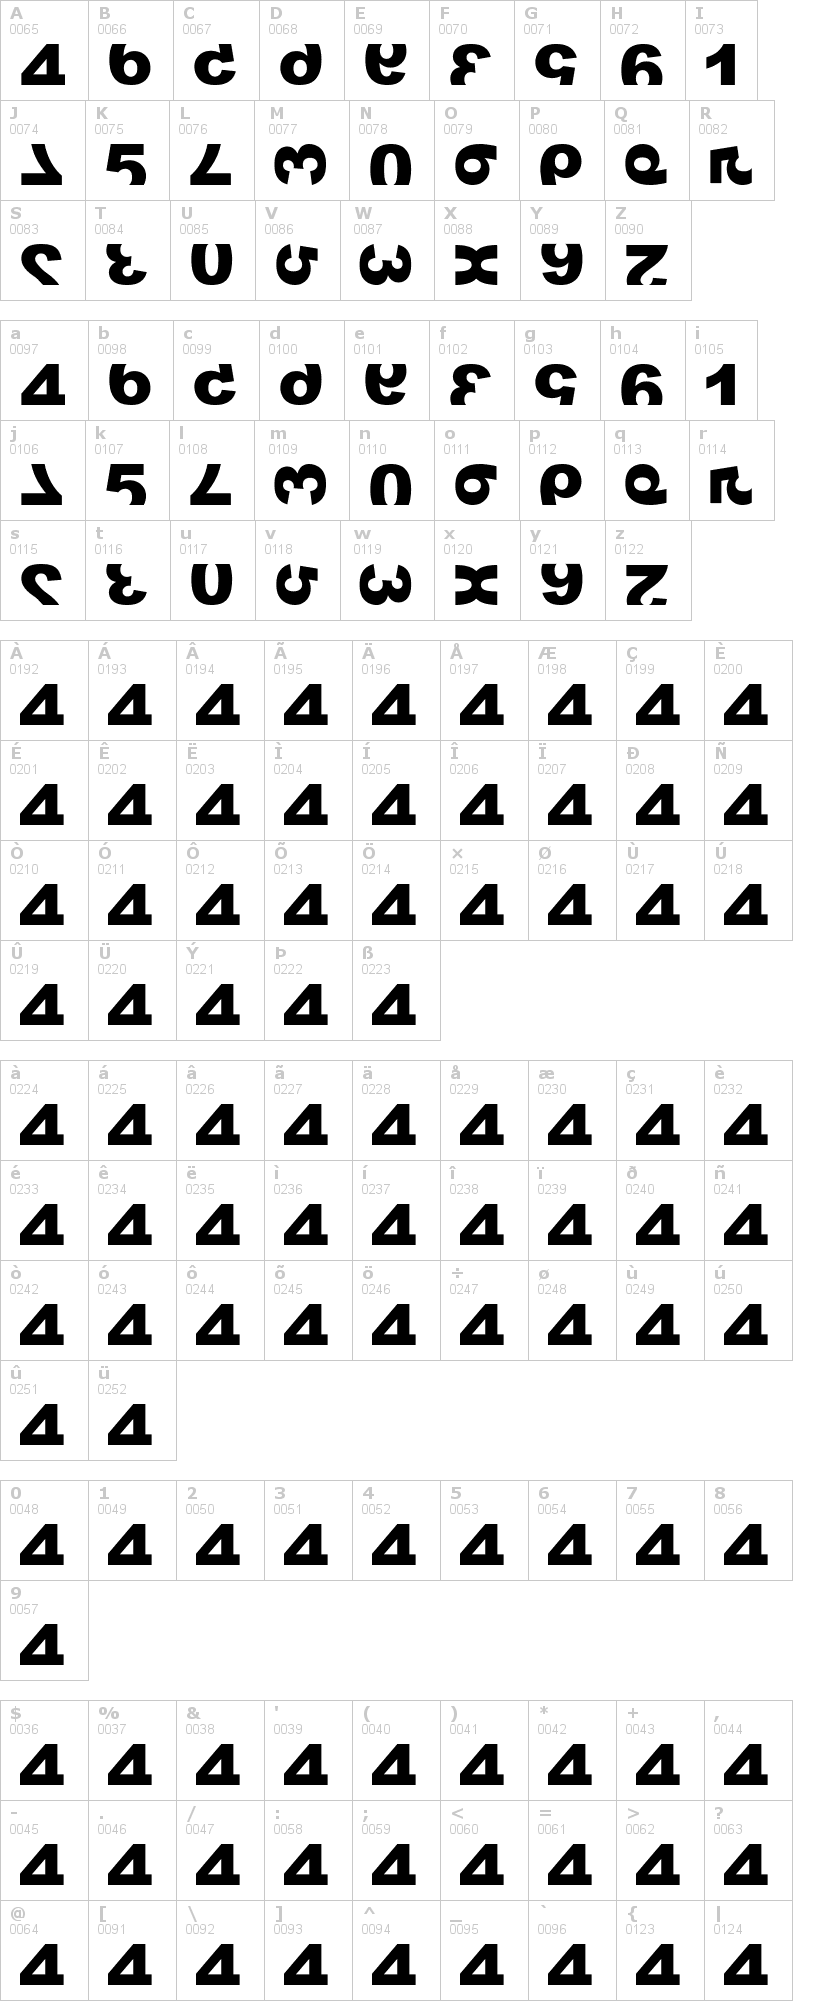 Lettere dell'alfabeto del font widznumber-text-1 con le quali è possibile realizzare adesivi prespaziati